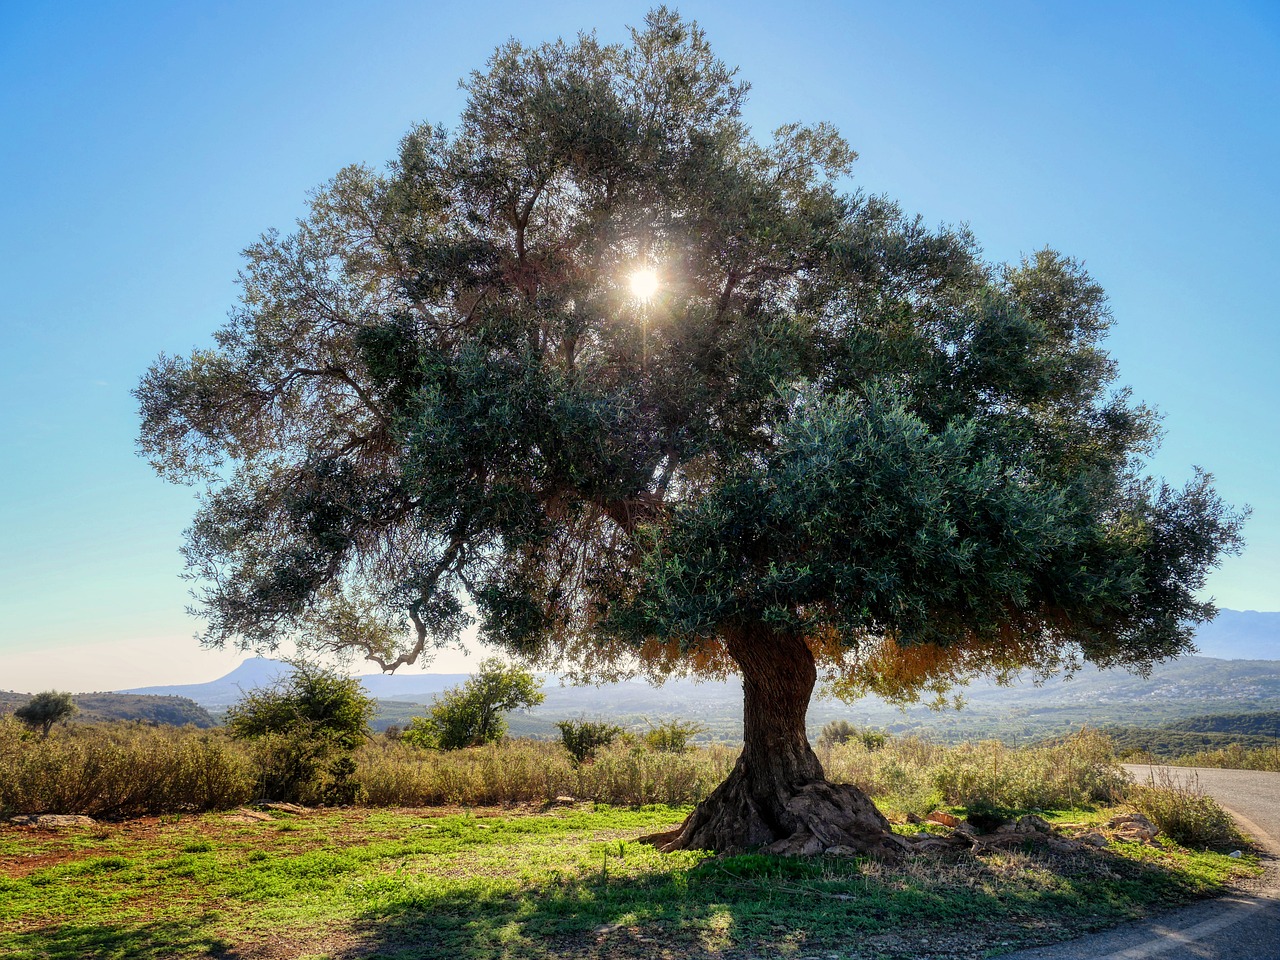 Op de Peloponnesos vind je eeuwenoude olijfbomen